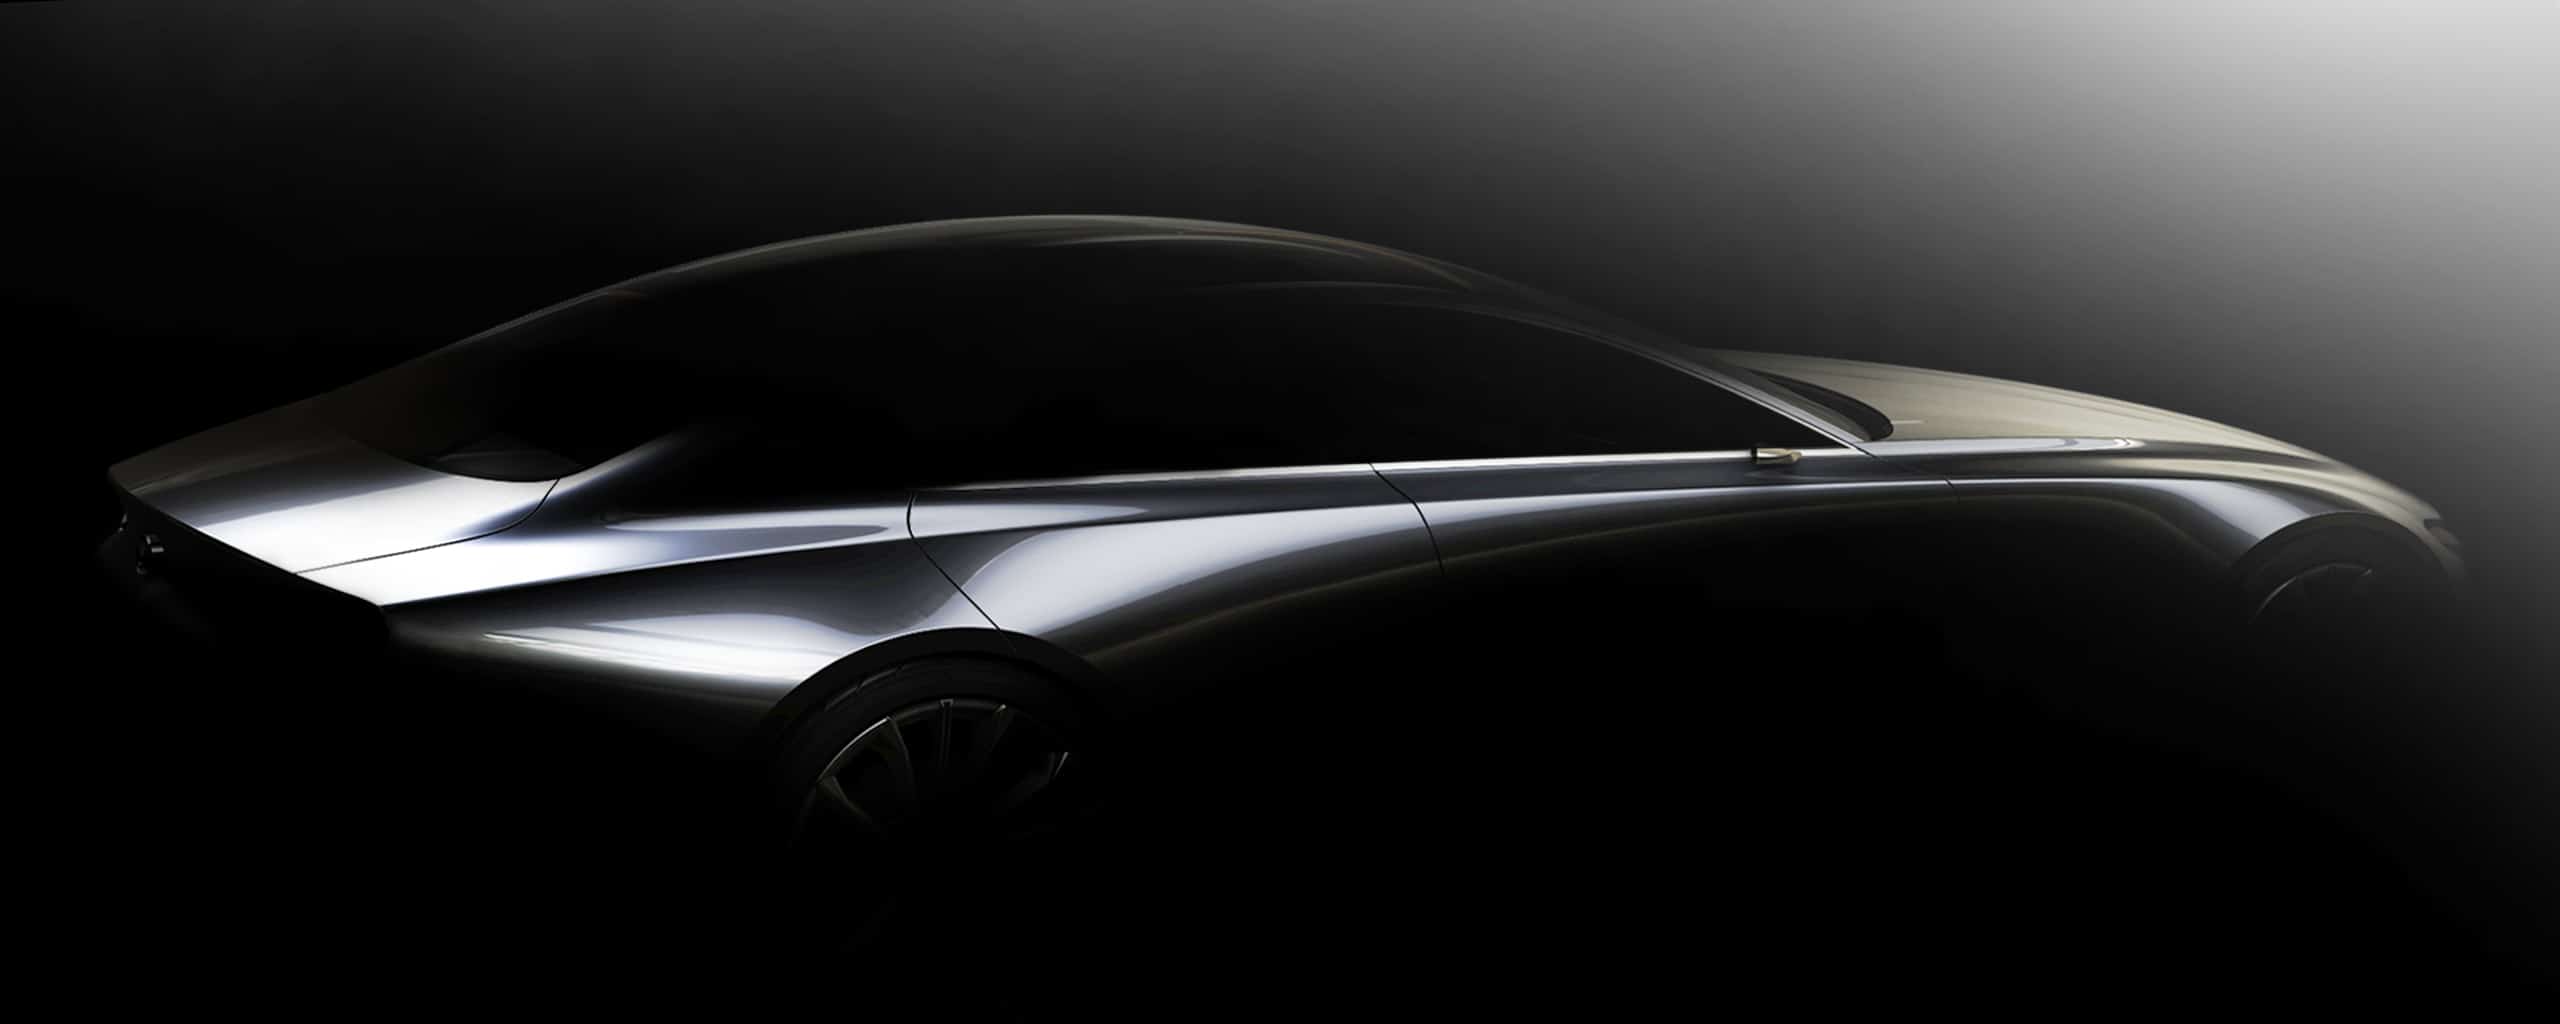 Profil de voiture concept Mazda de couleur argent